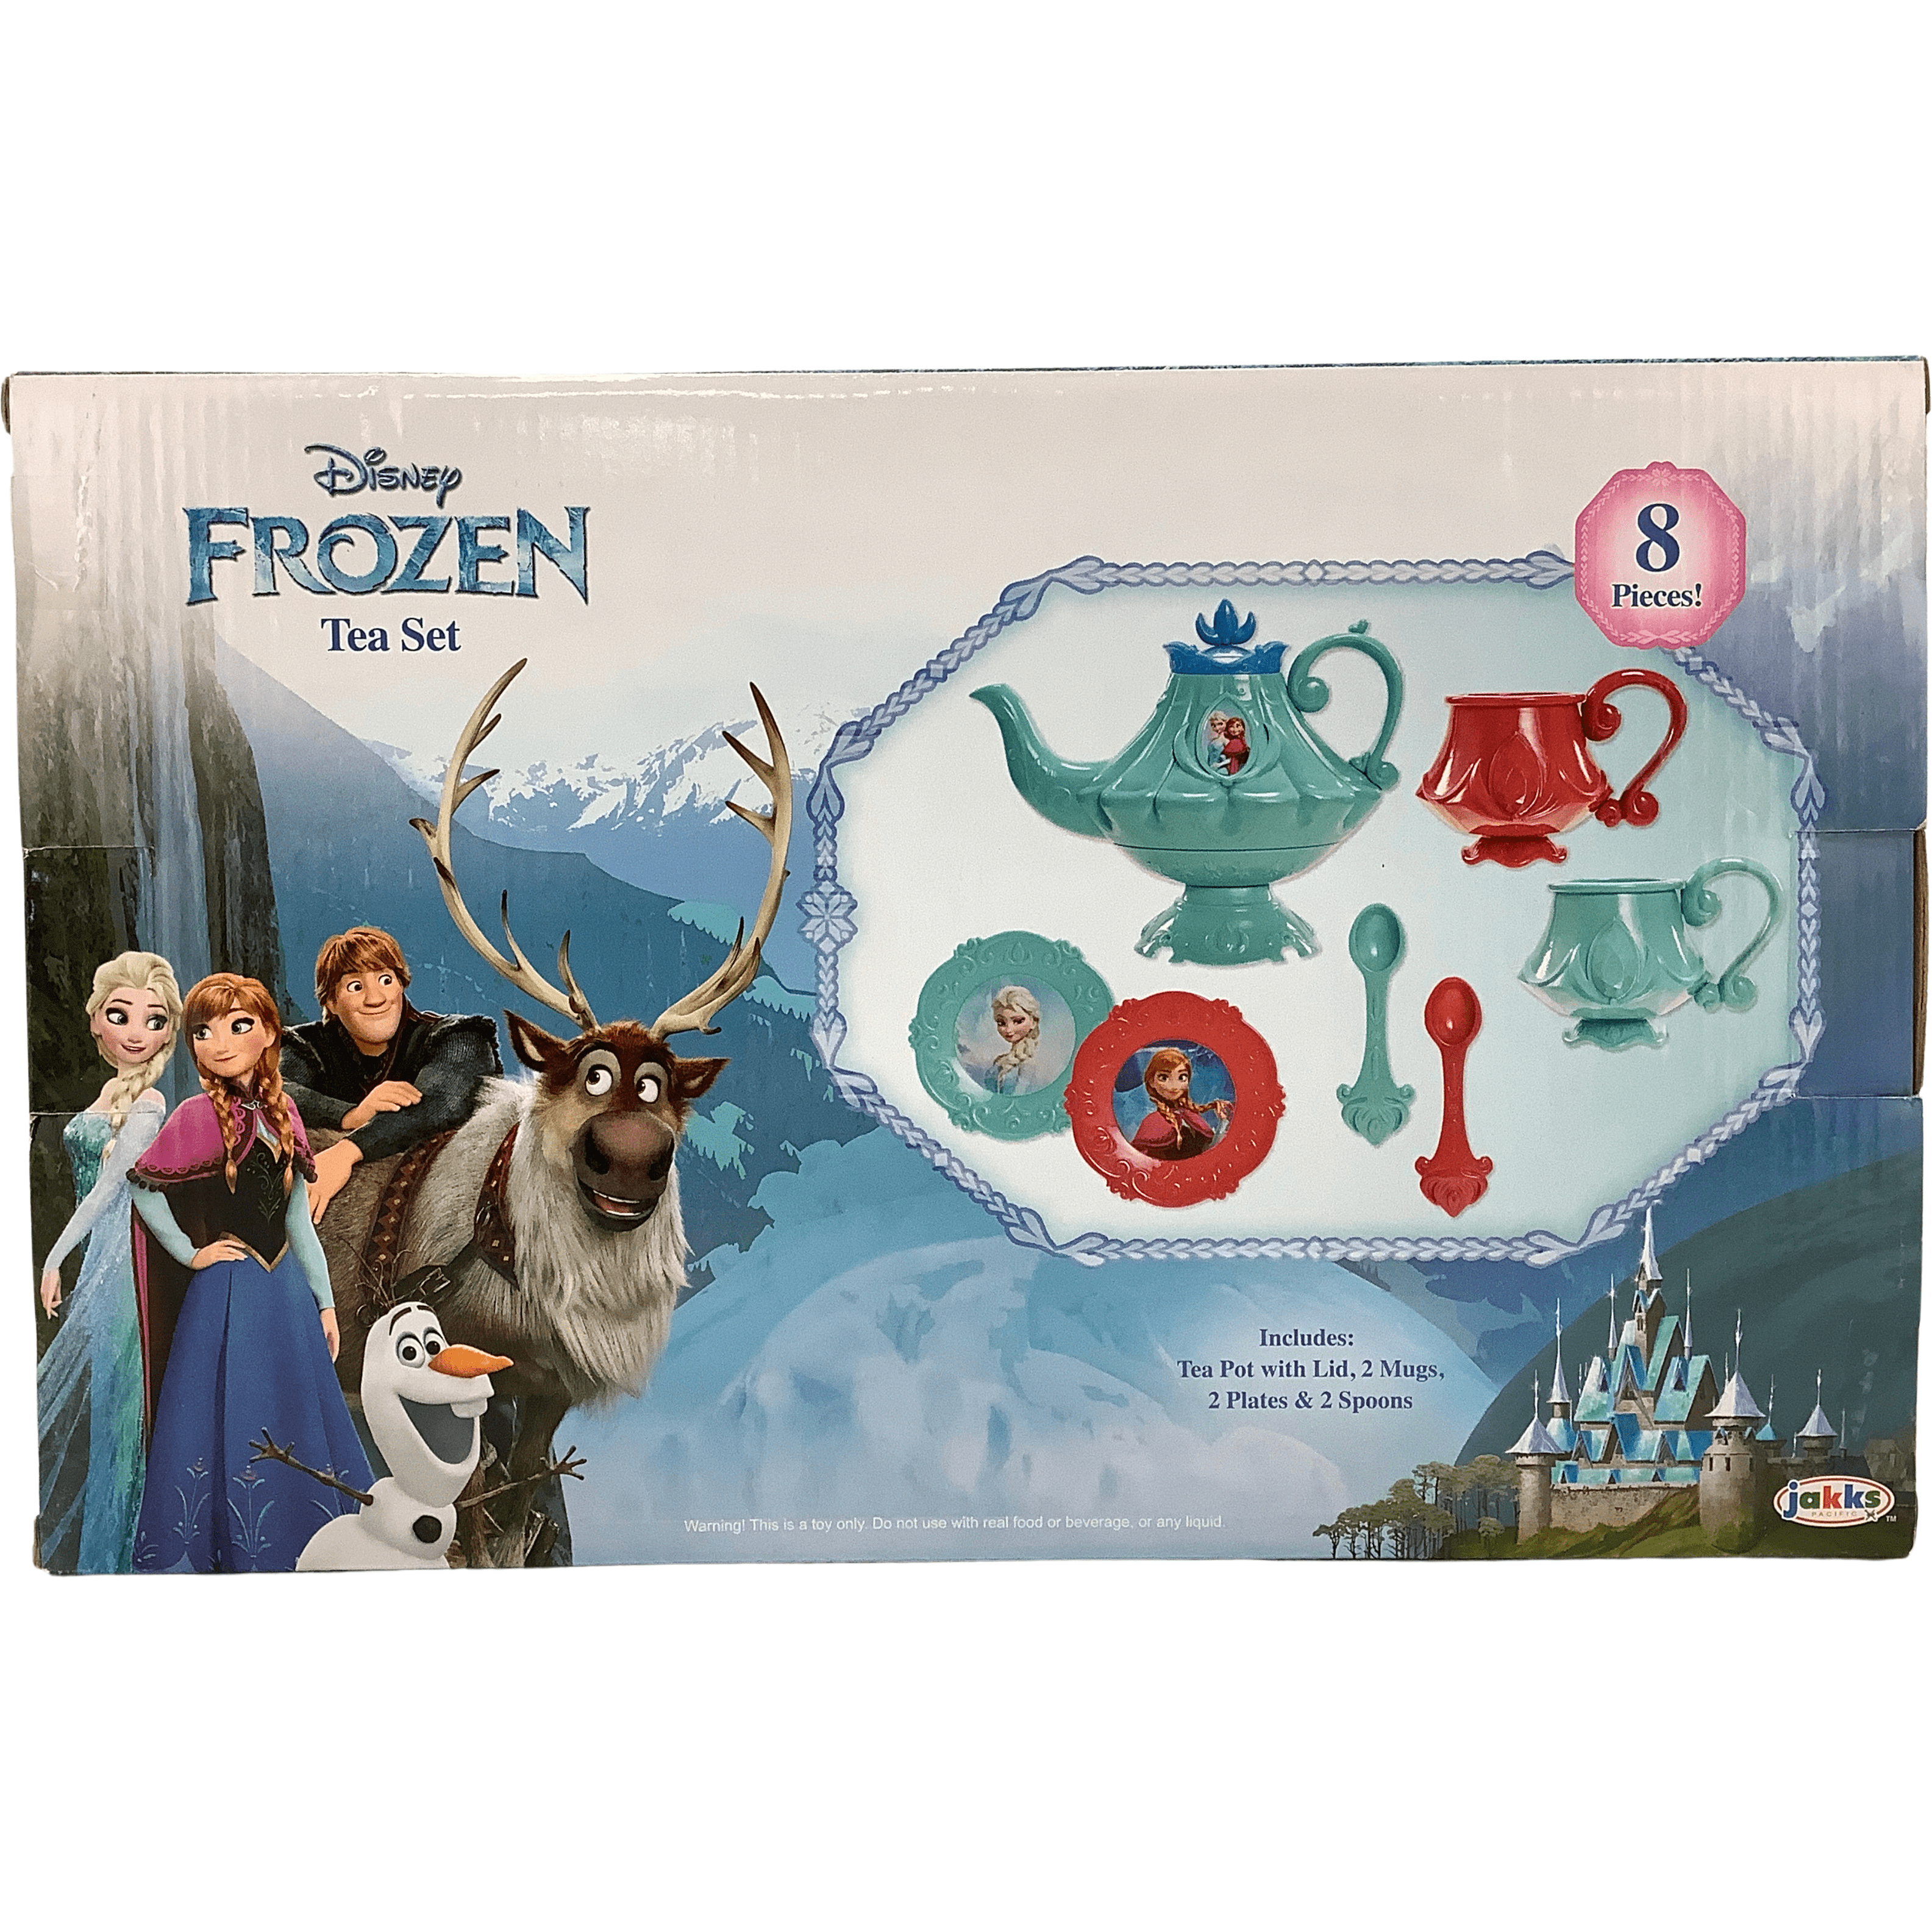 Disney Frozen Tea Set / 8 Piece Set / Tea Party Bundle / Anna and Elsa **DEALS**